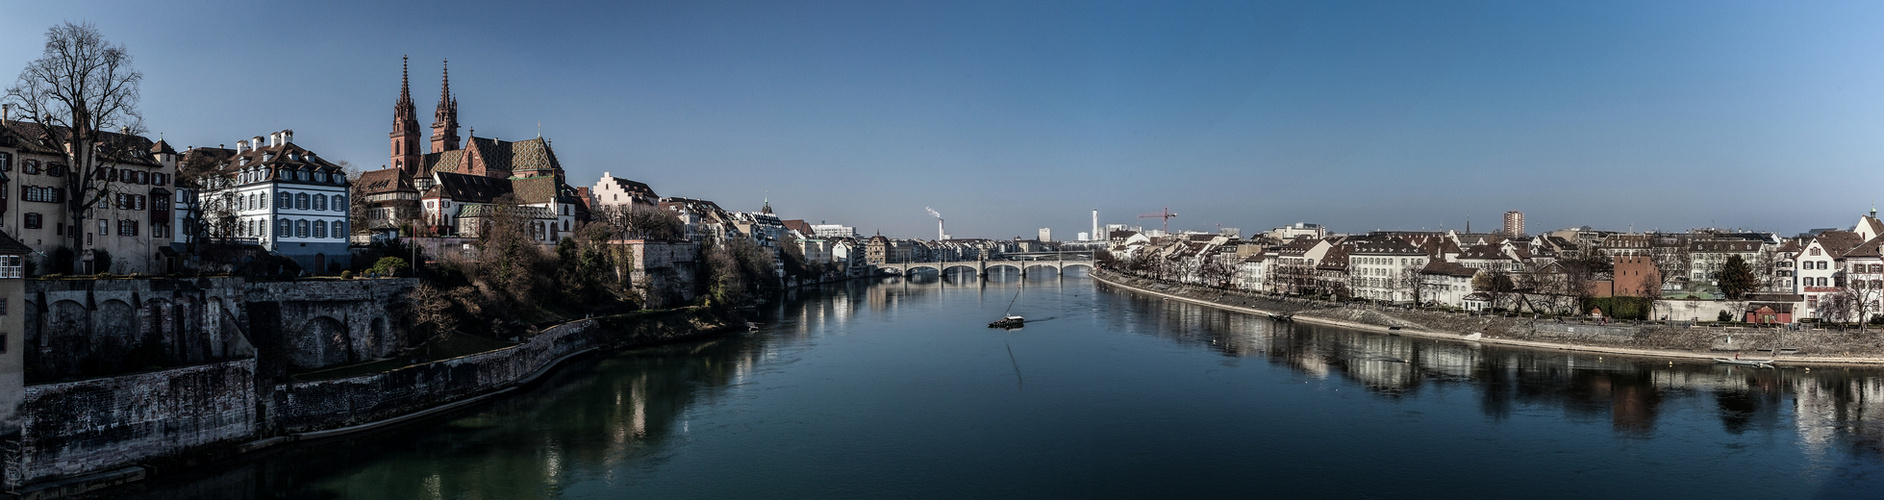 Rheinpanorama Basel